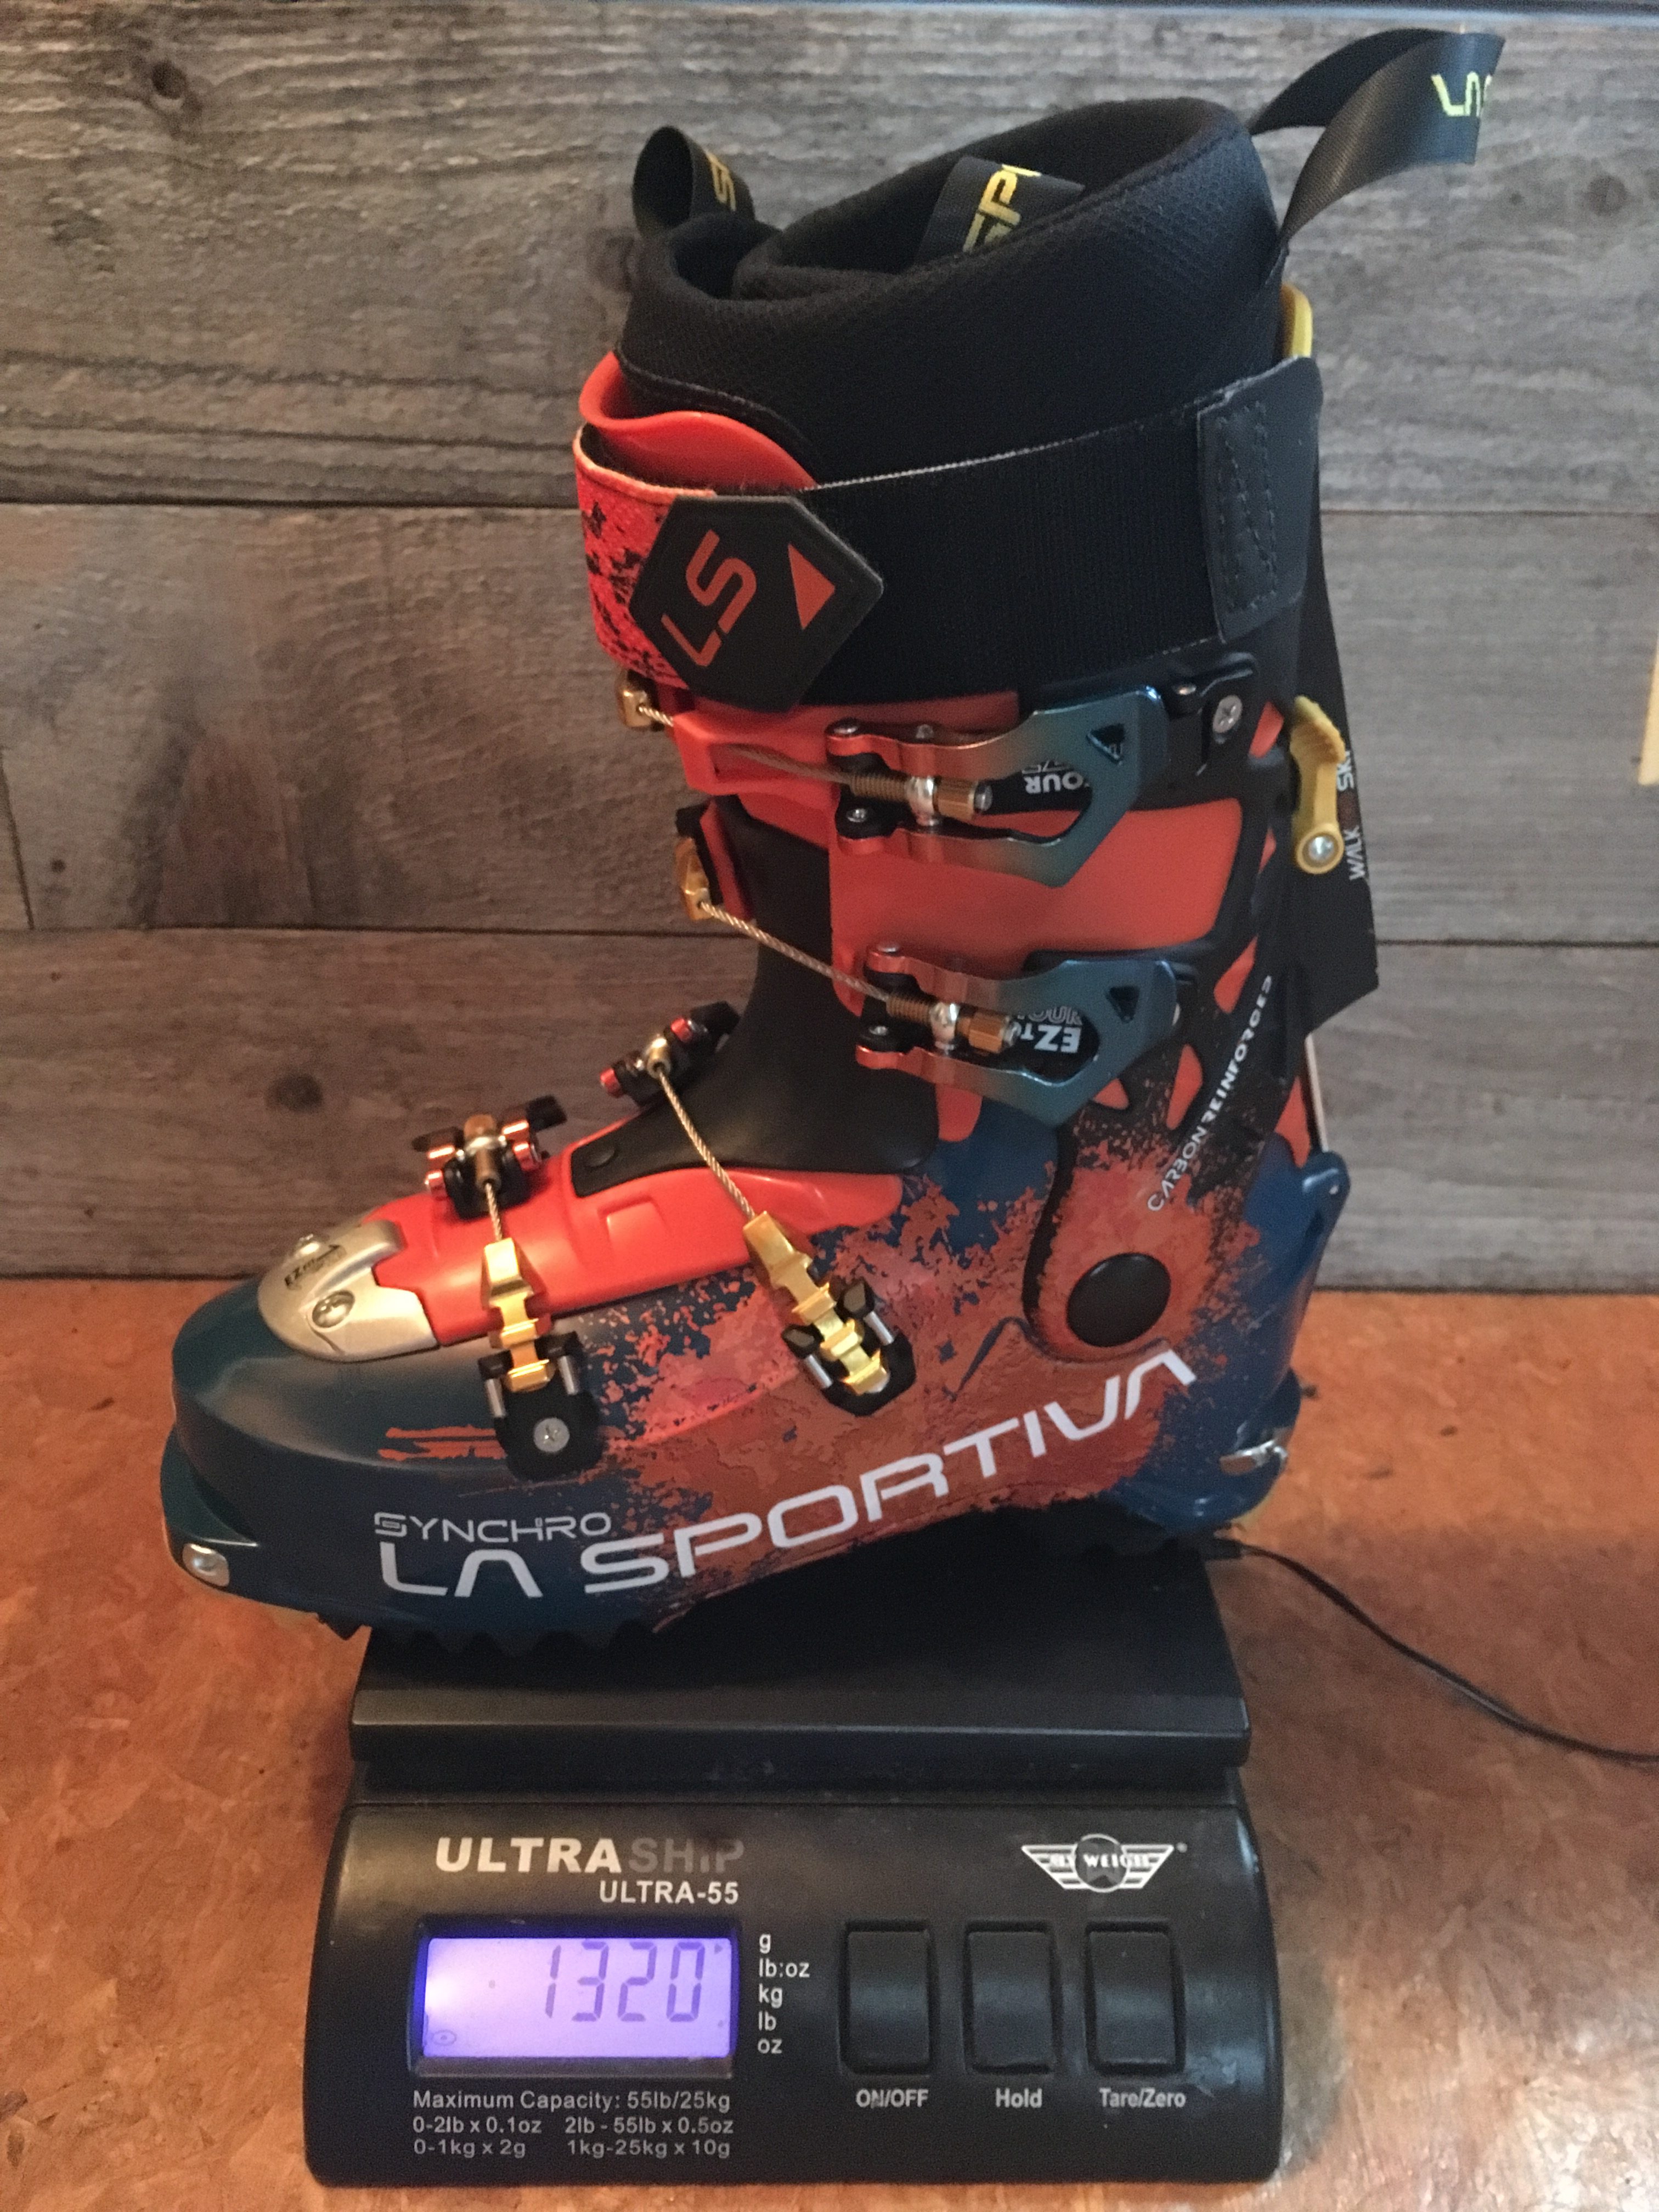 La Sportiva Synchro AT Ski Boot - first 